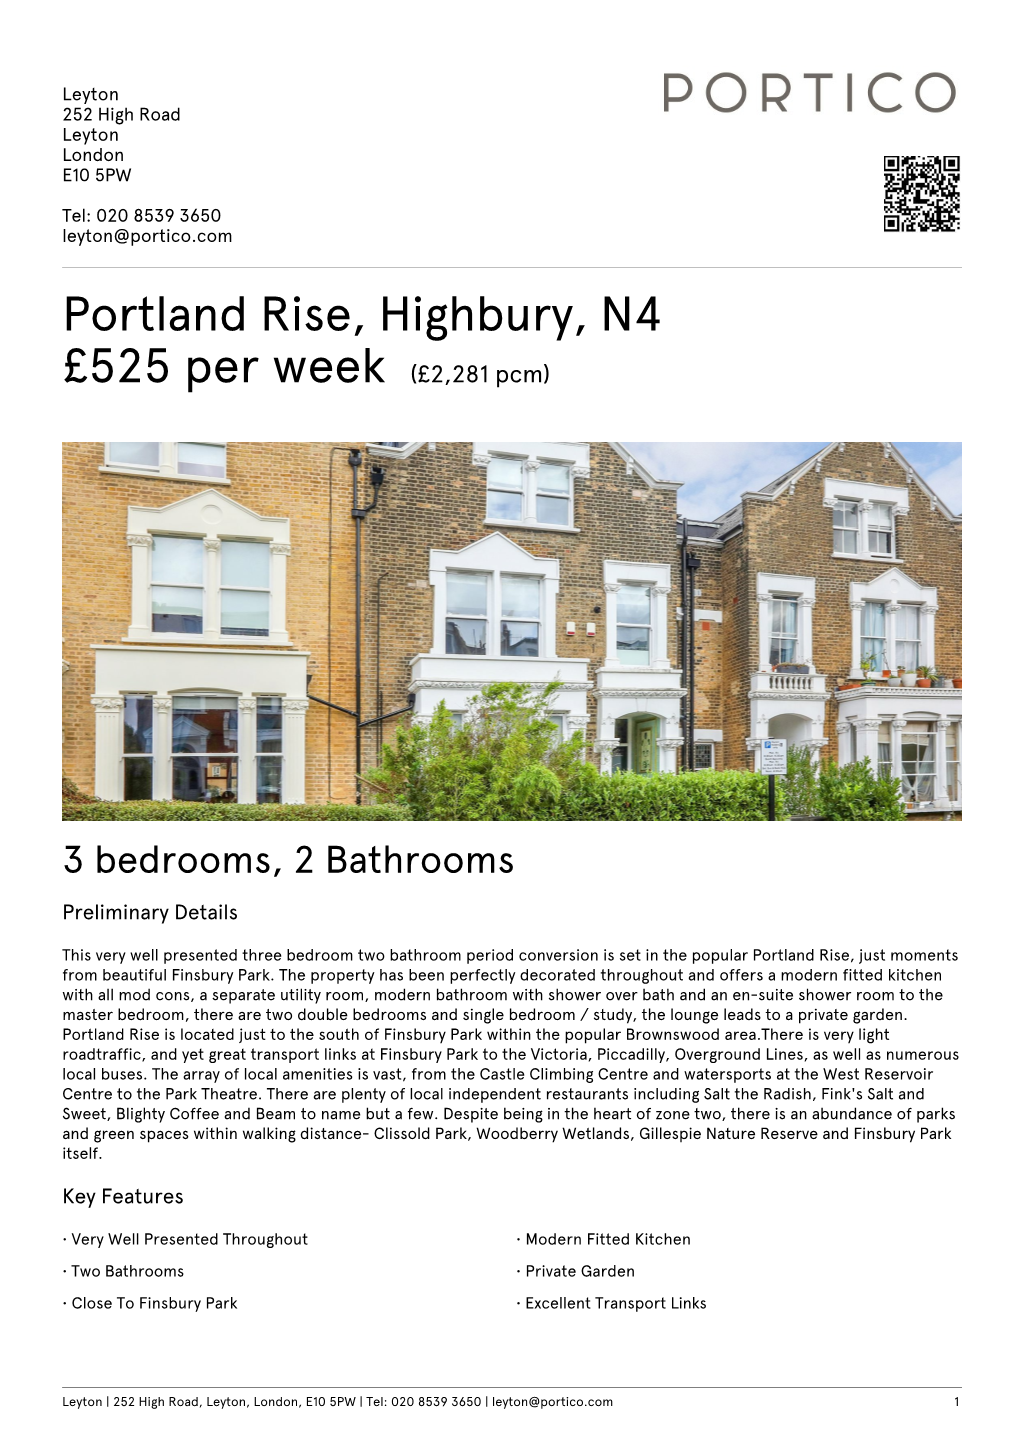 Portland Rise, Highbury, N4 £525 Per Week